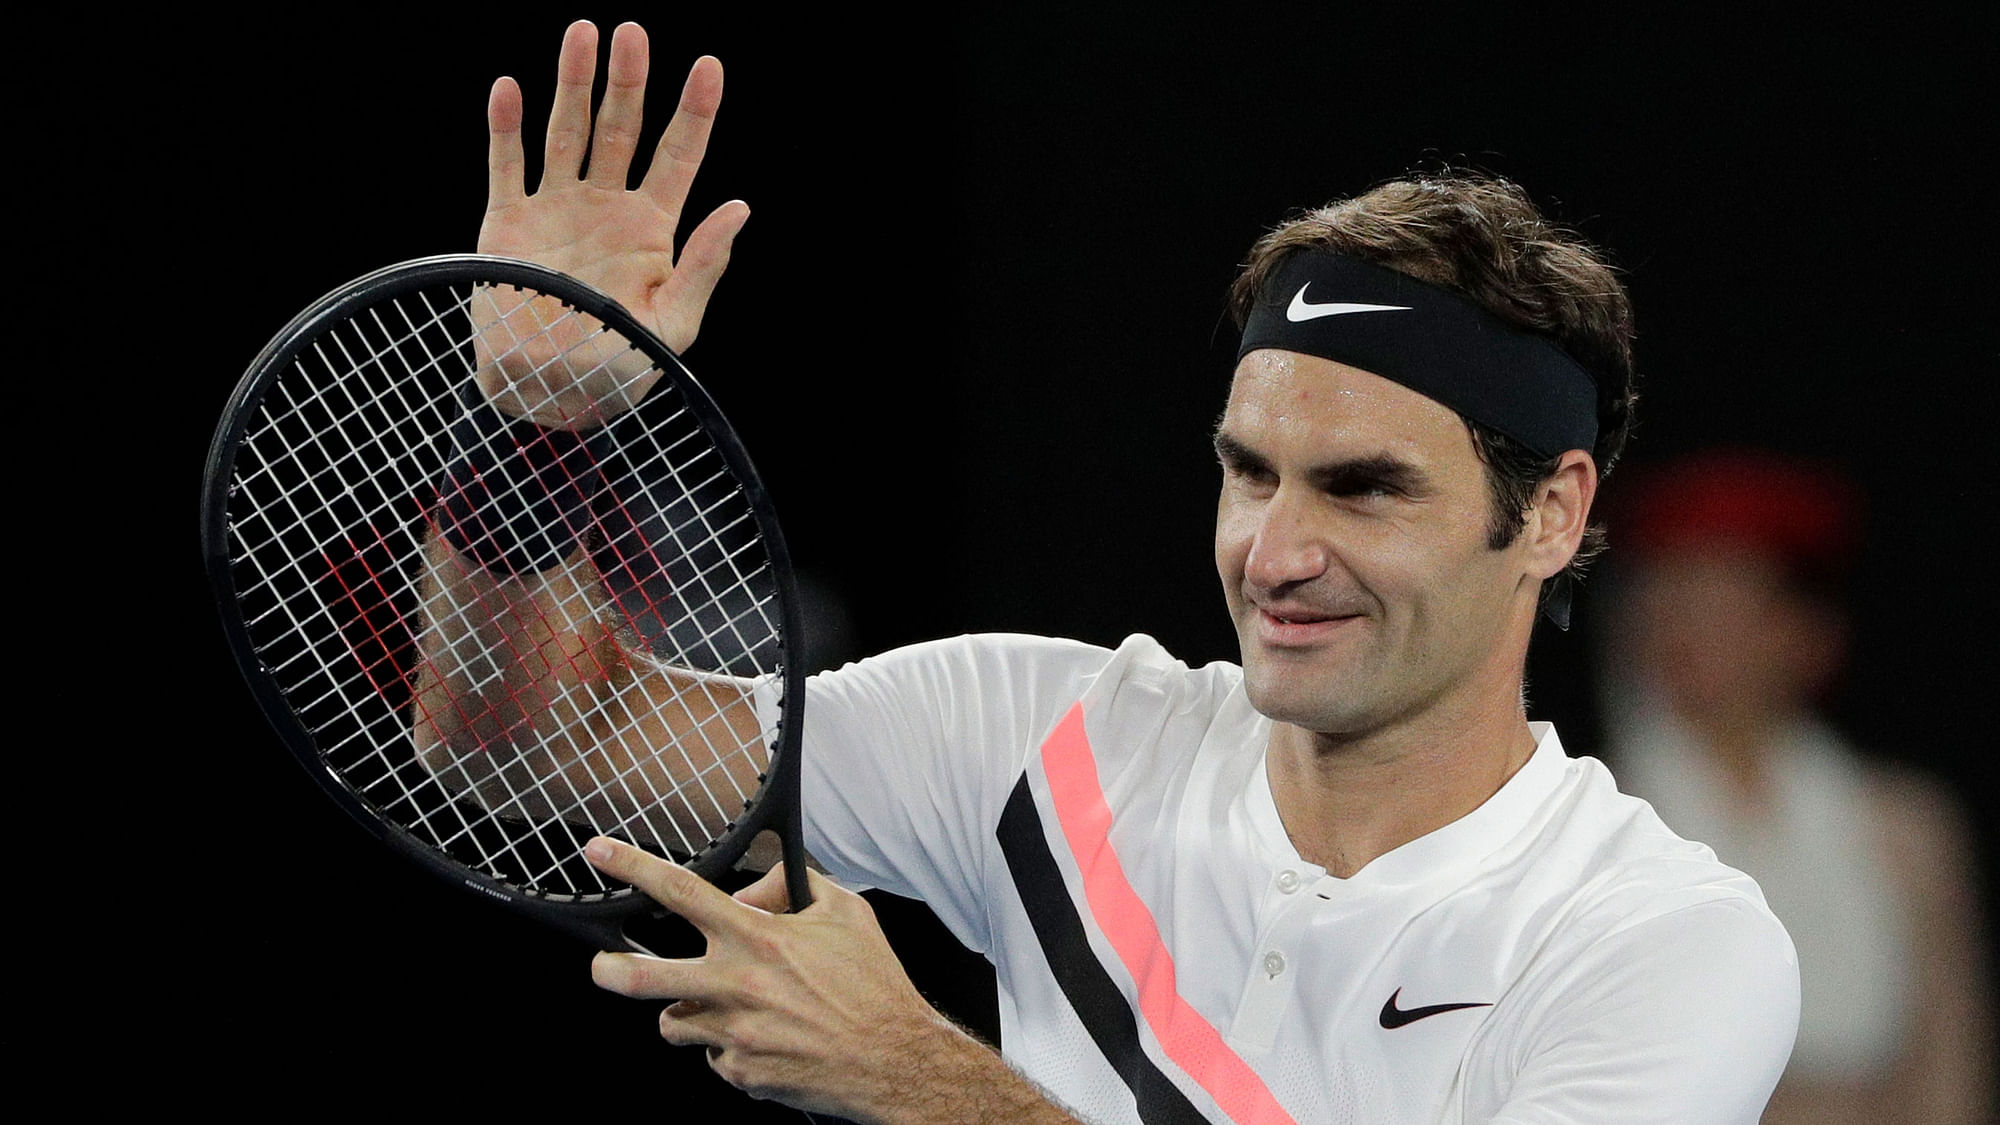 Roger Federer is the&nbsp;oldest ATP world number one.